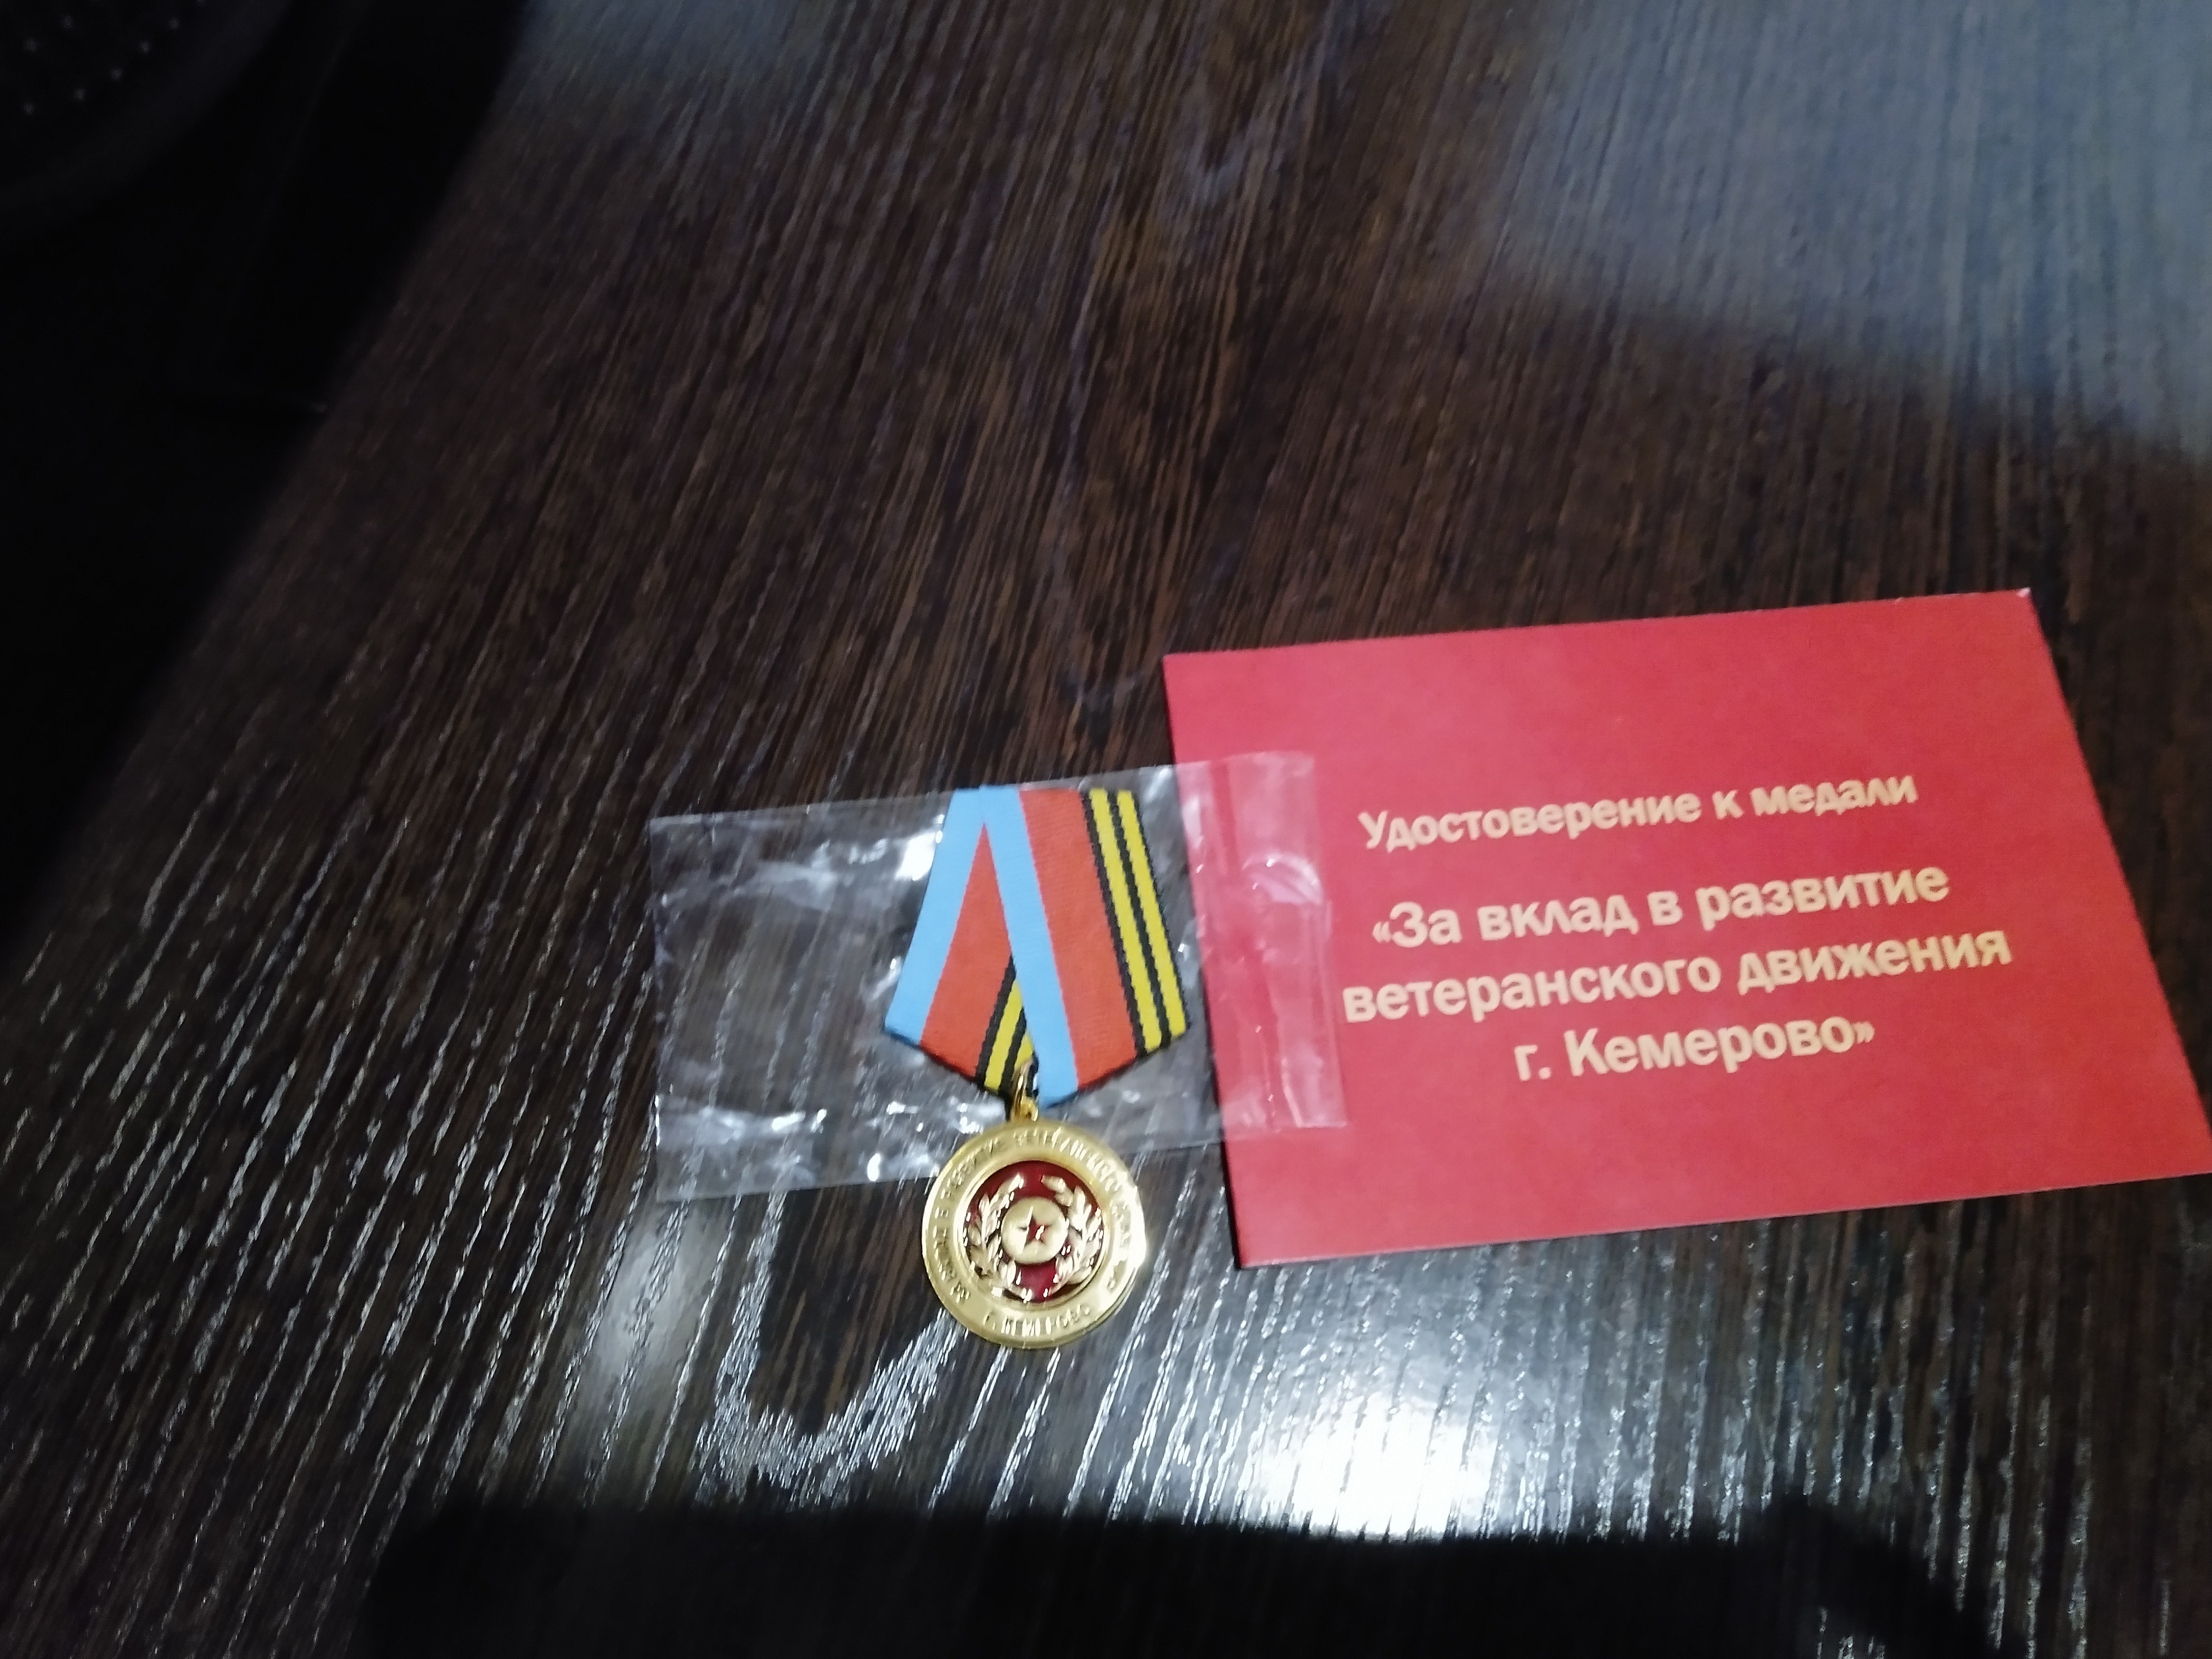 Игуминов В.И. -медаль «За вклад в развитие ве